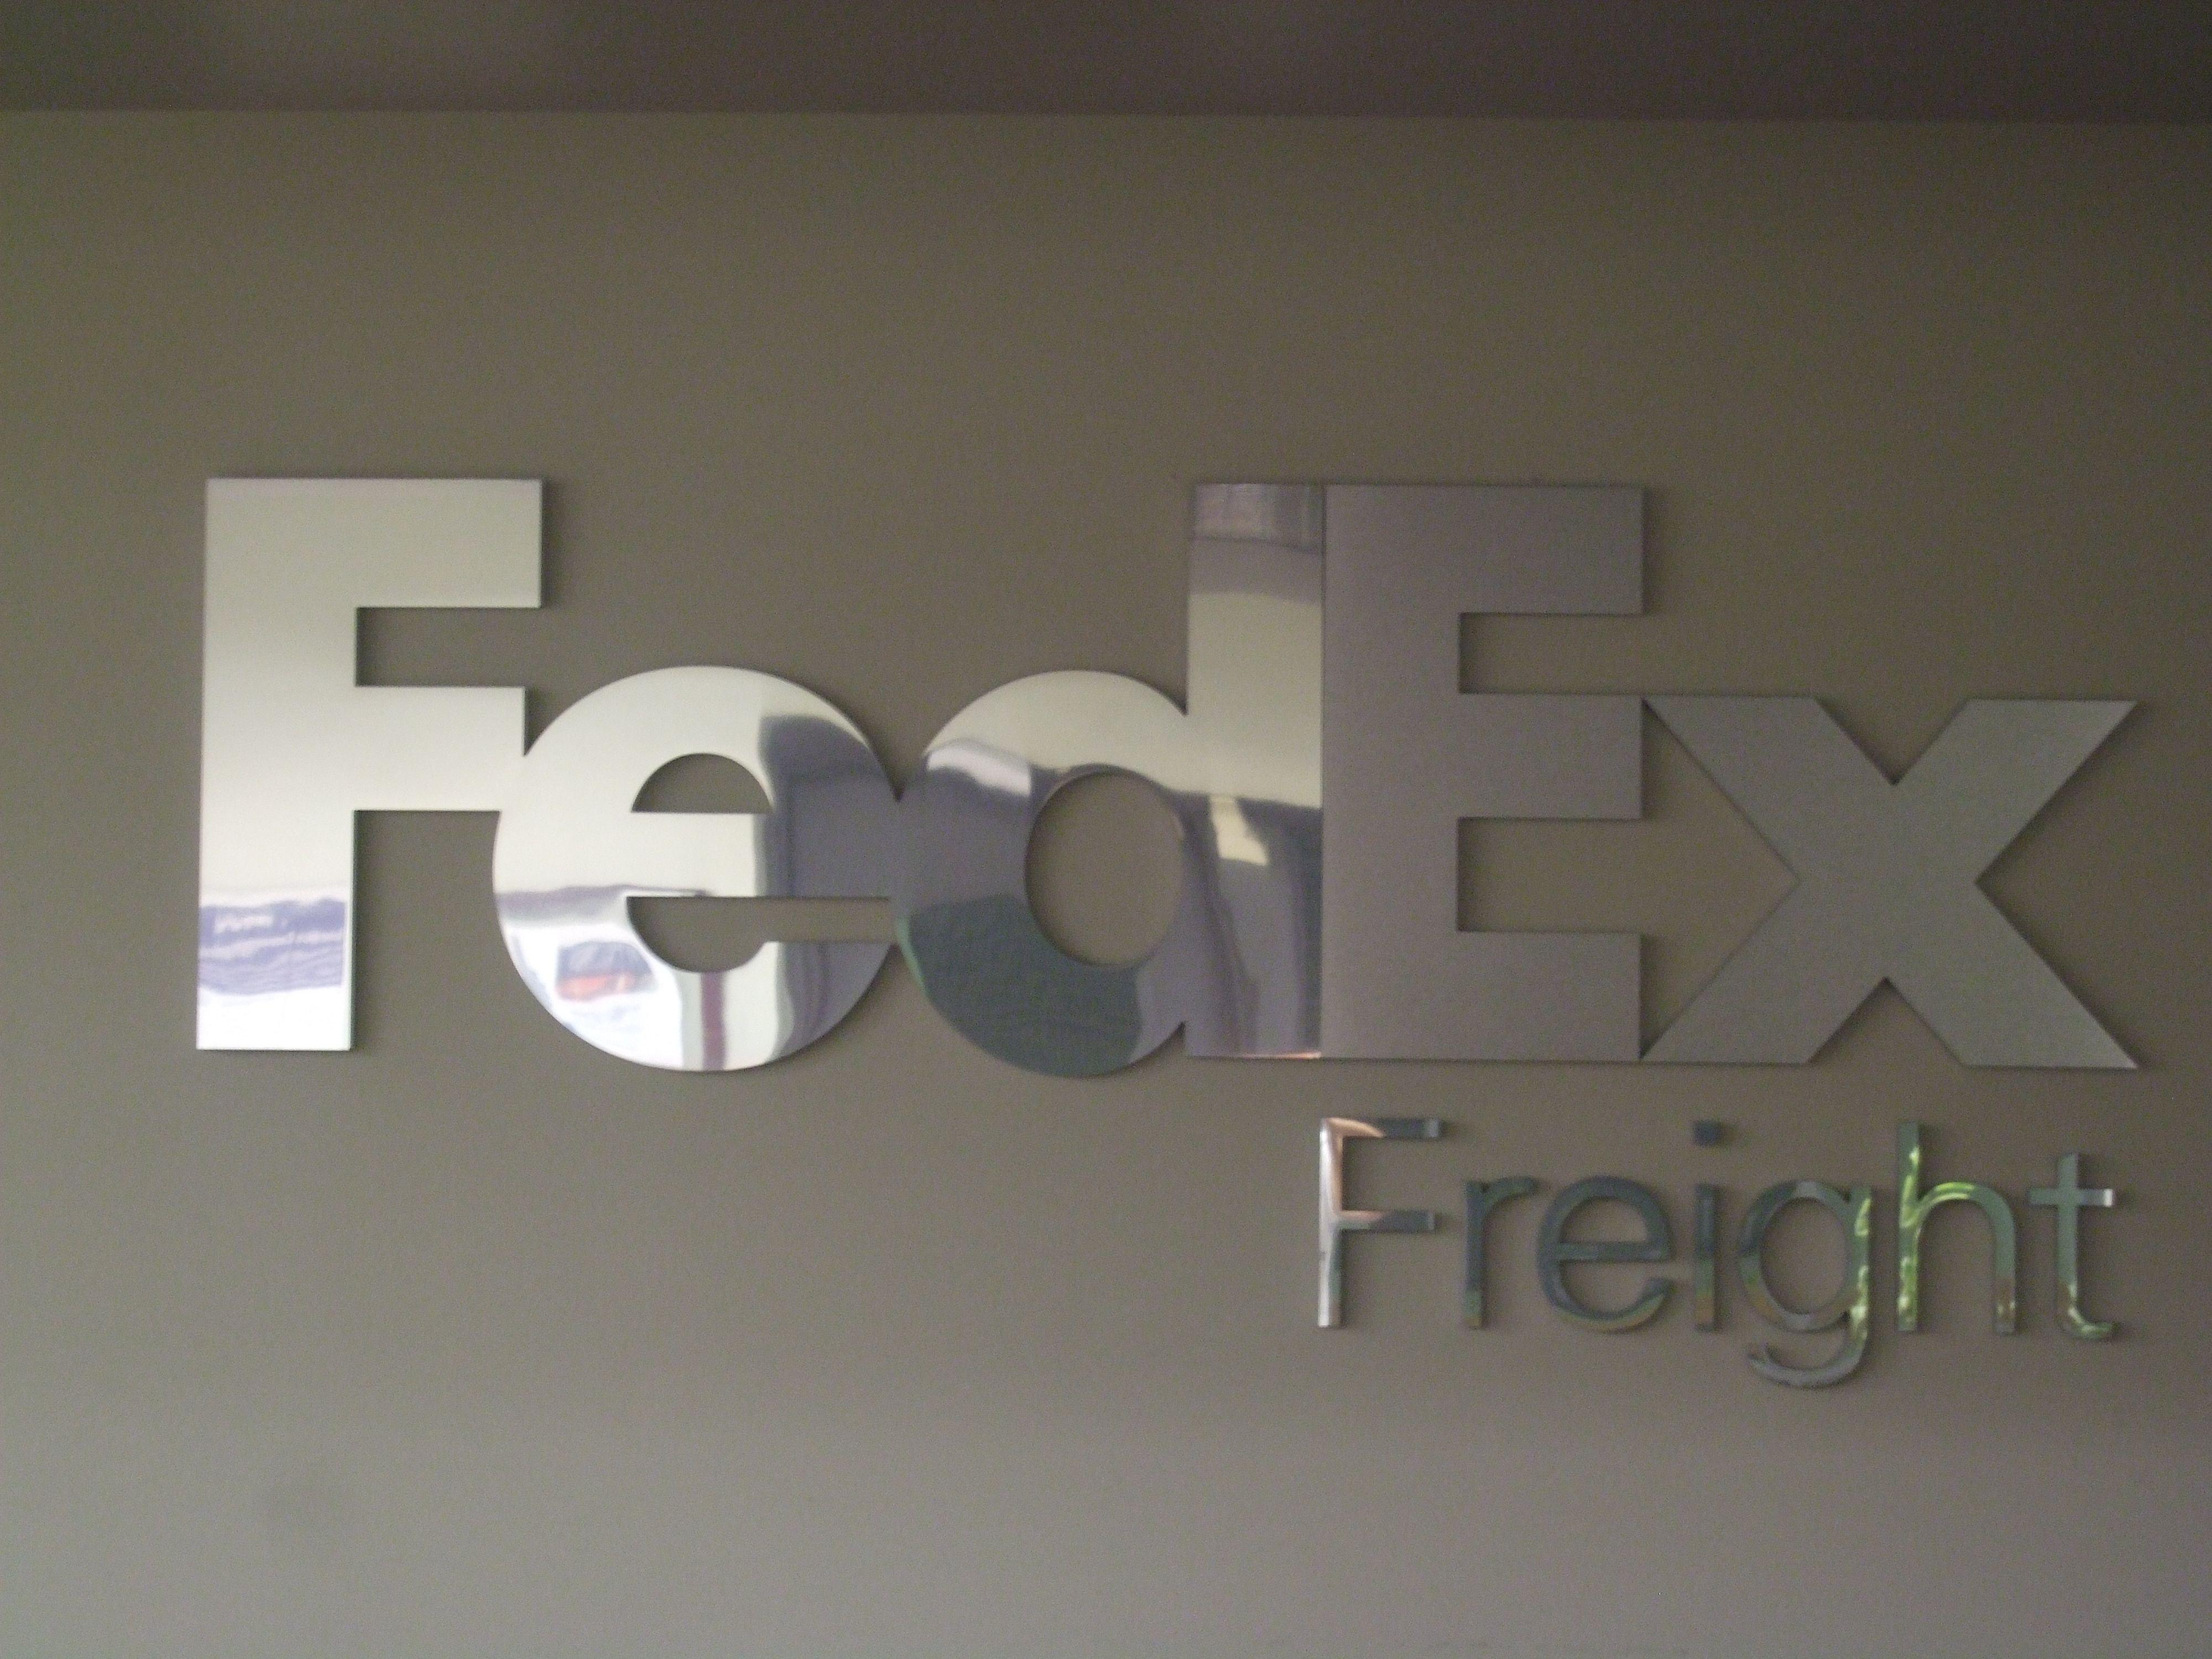 FedEx Freight New Logo - FedEx Freight logo at Wilson Avenue | FedEx | Fedex express, Parcel ...